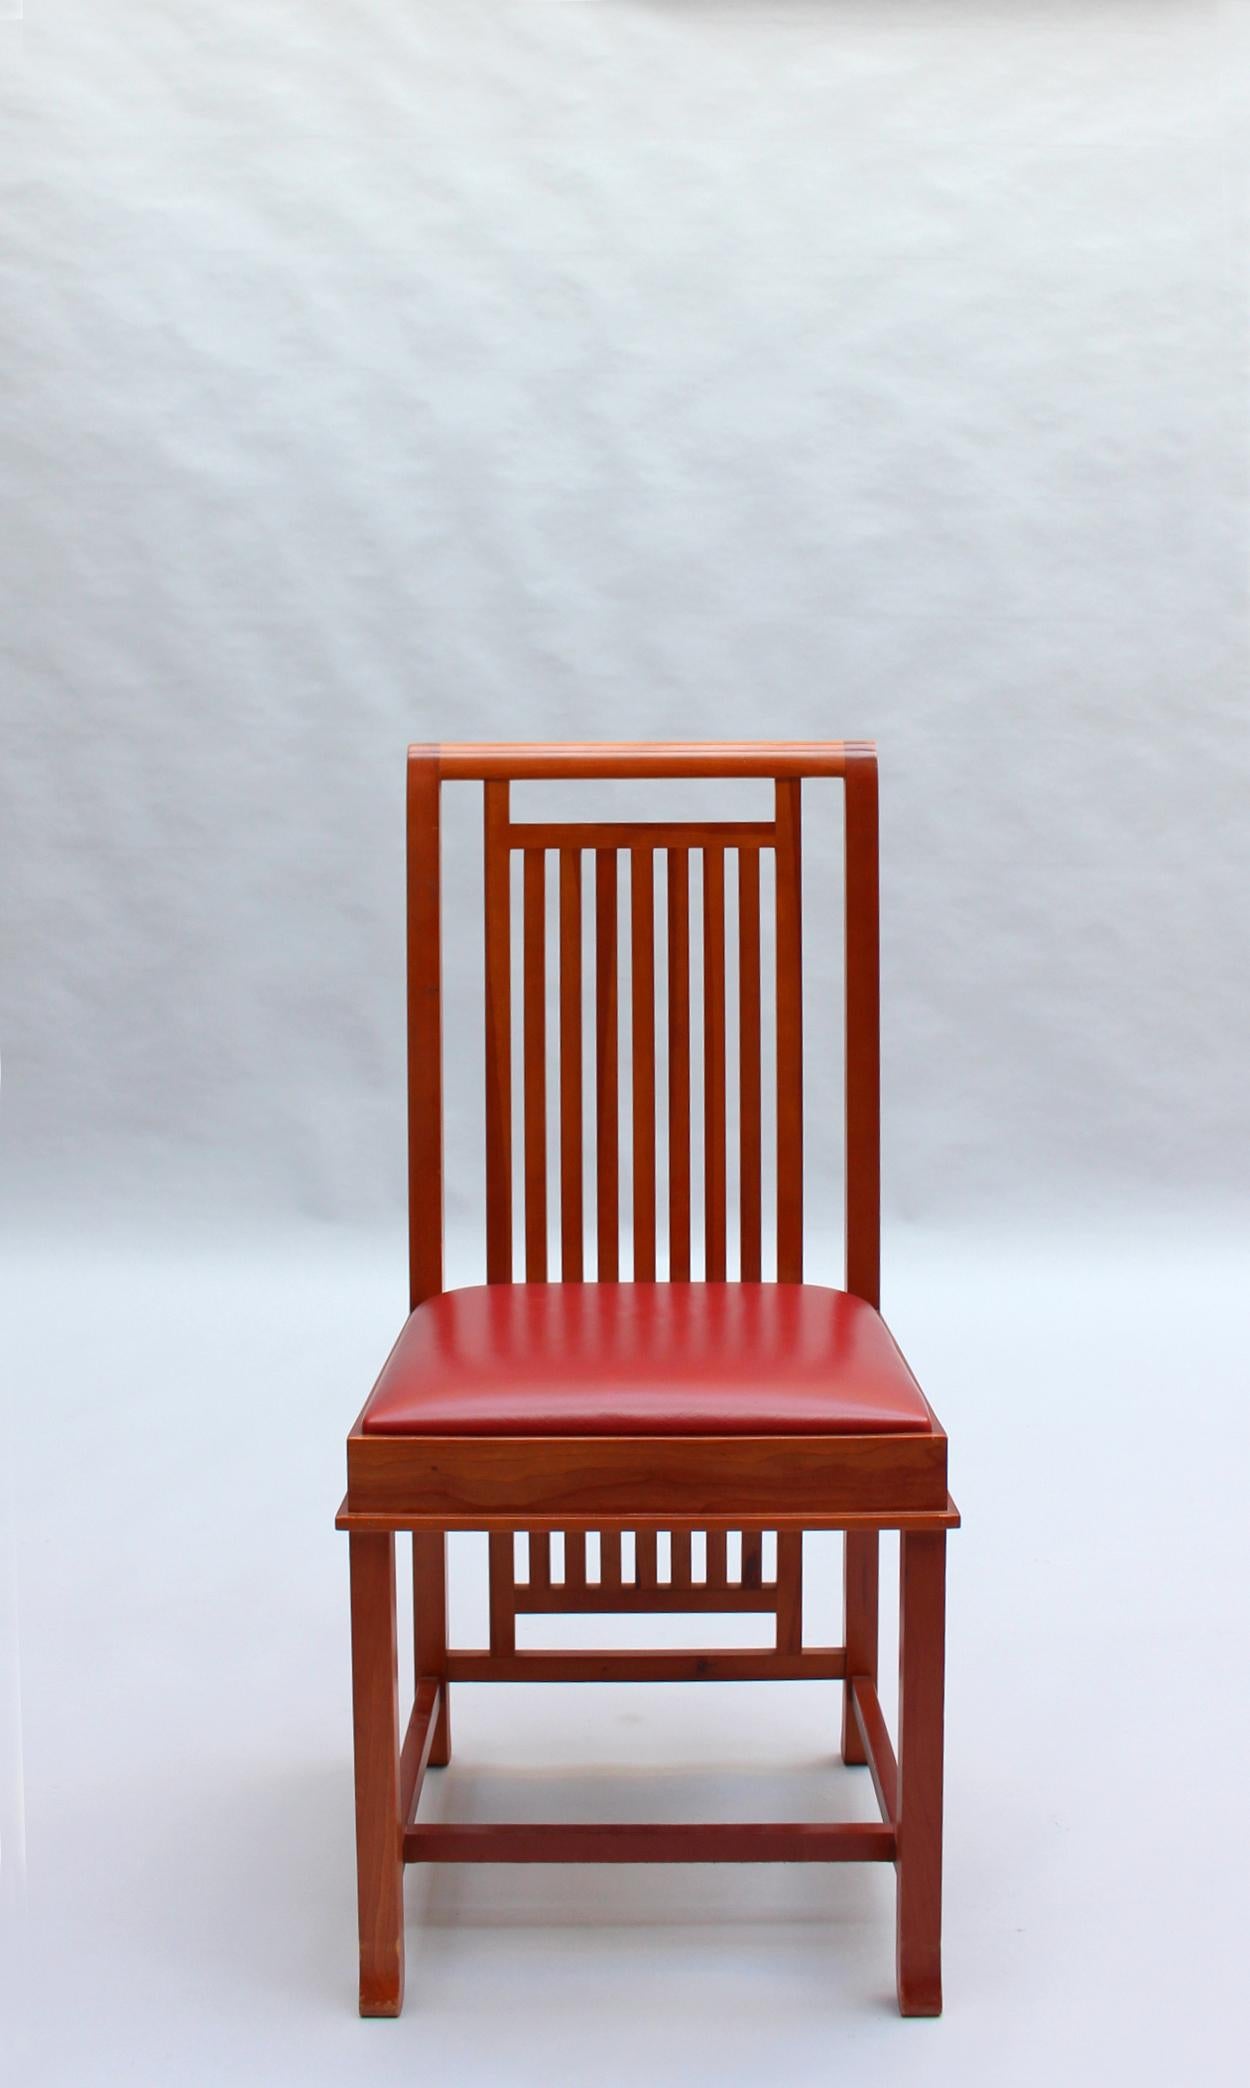 Fin du 20e siècle Paire de chaises « Coonley 2 » de Frank Lloyd Wright, édition Cassina en vente